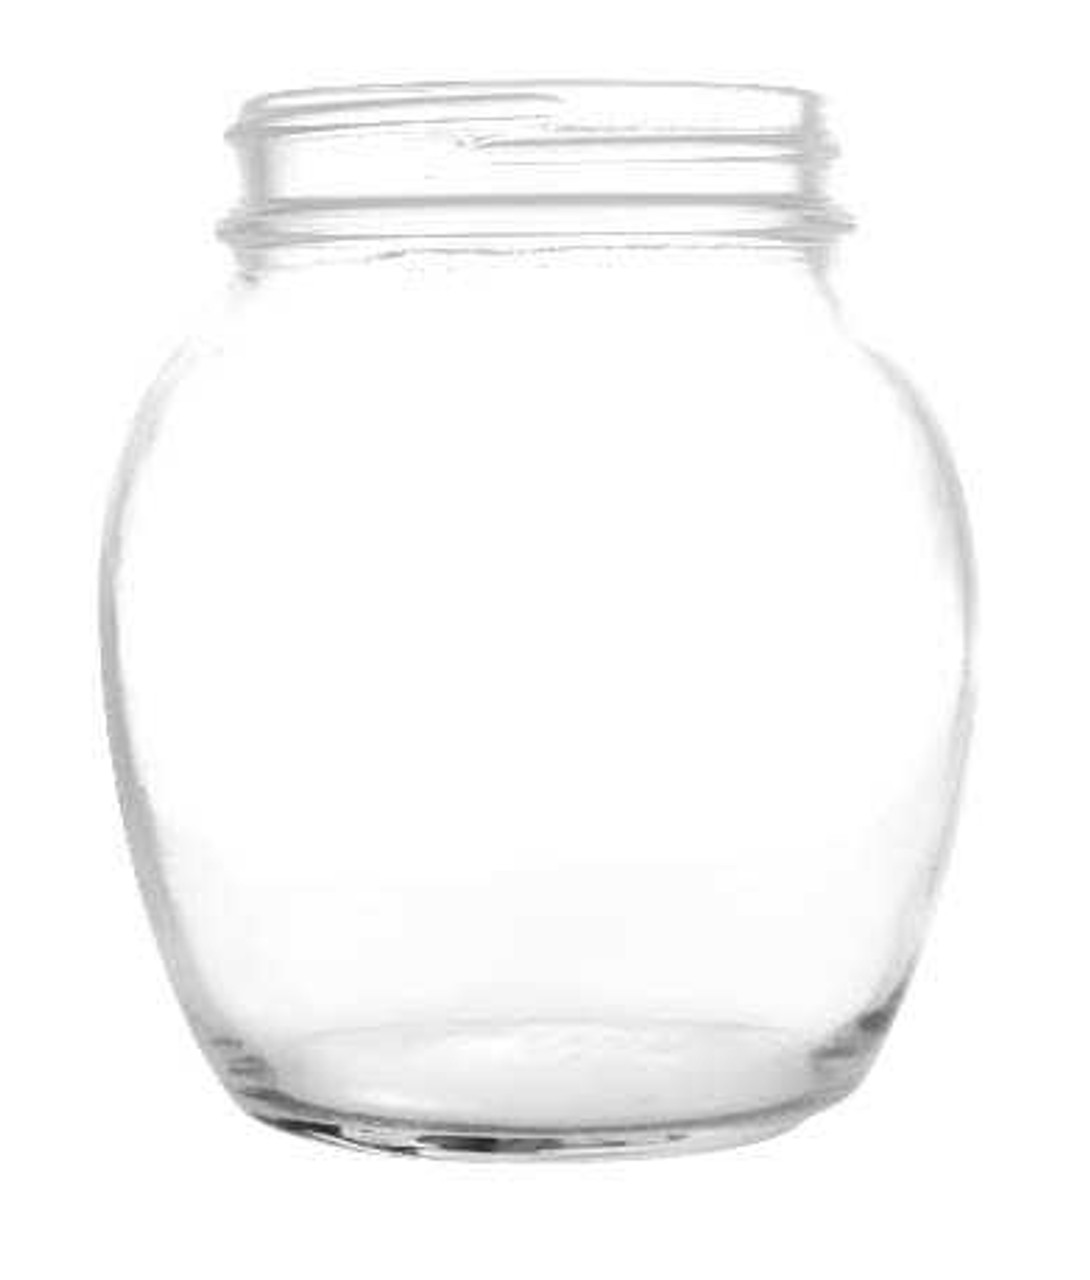 12 oz Globe Glass Jar with Lid